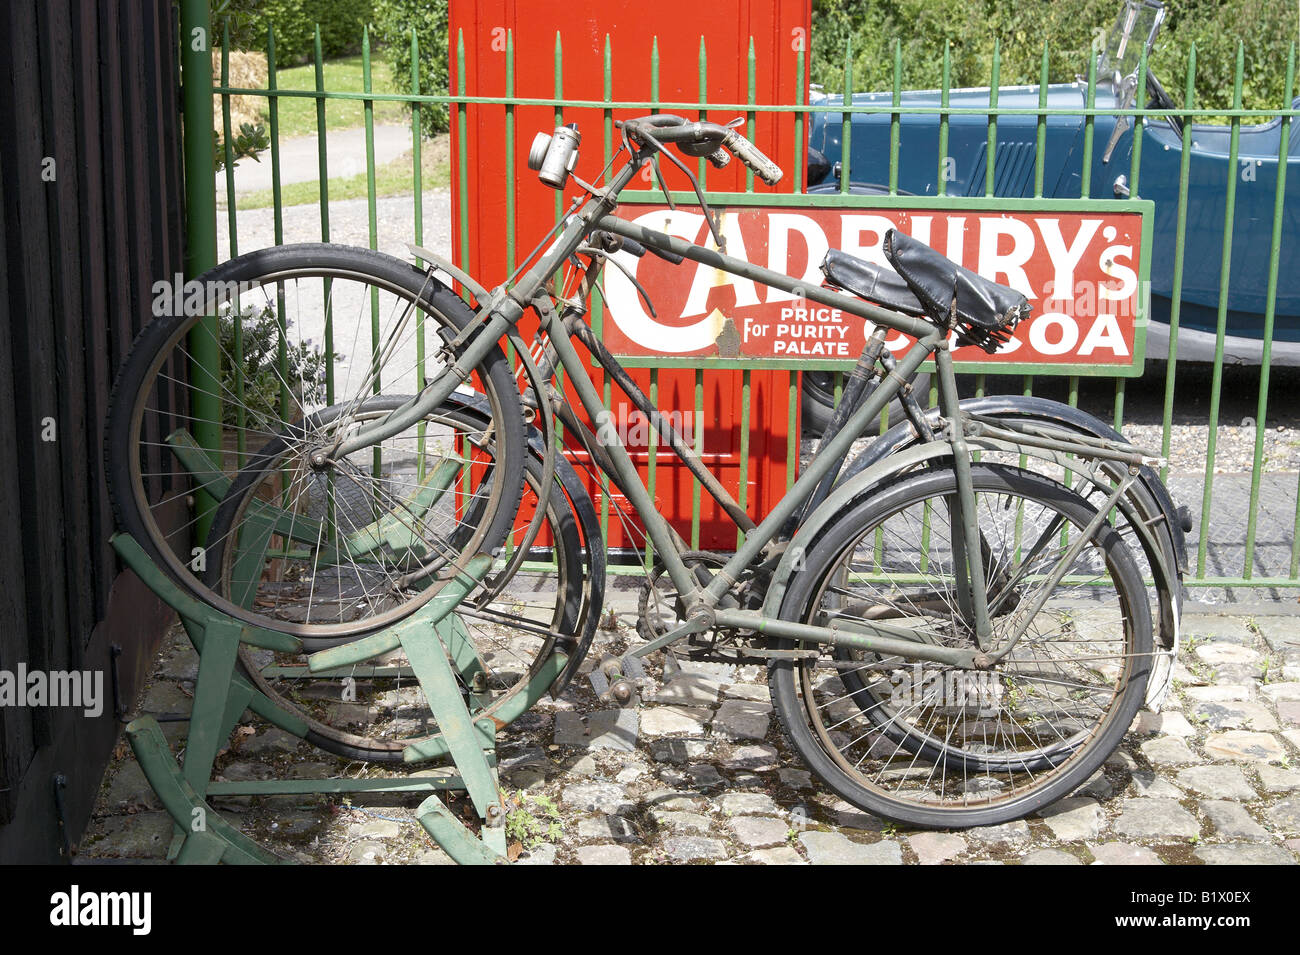 Altmodische Fahrräder in einem Fahrradständer auf dem erhaltenen Dampf Alter Bahnhof mit Werbung Emailleschild und rote Telefonzelle. Stockfoto